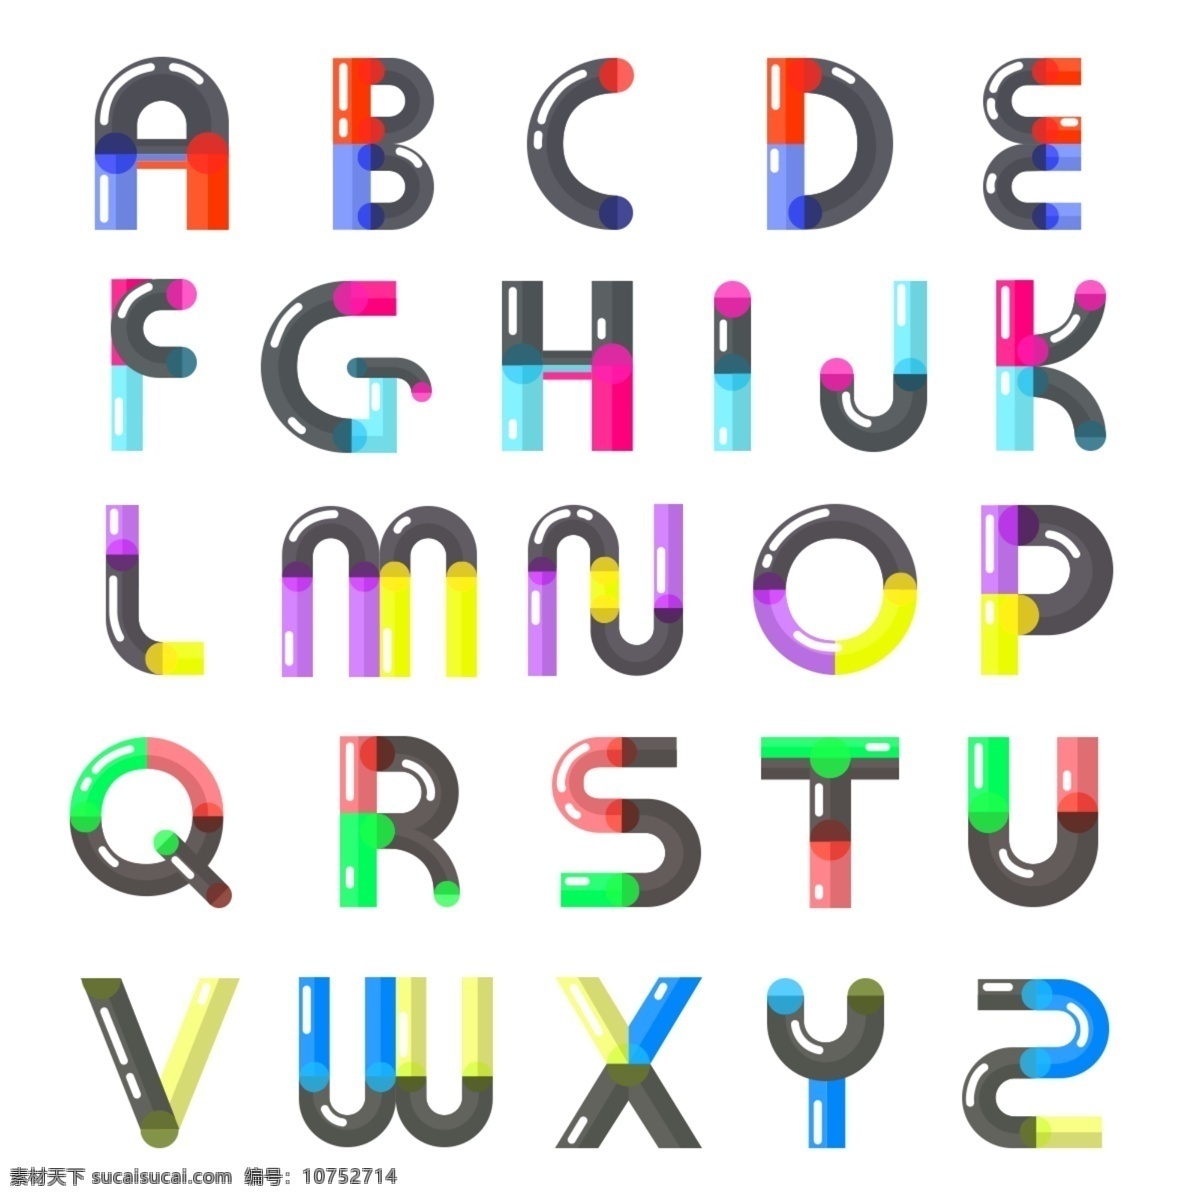 英文 字母 可爱 渐变 艺术 字 艺术字 字母表 大写字母 英文字母 简约 扁平化 卡通 立体 光点